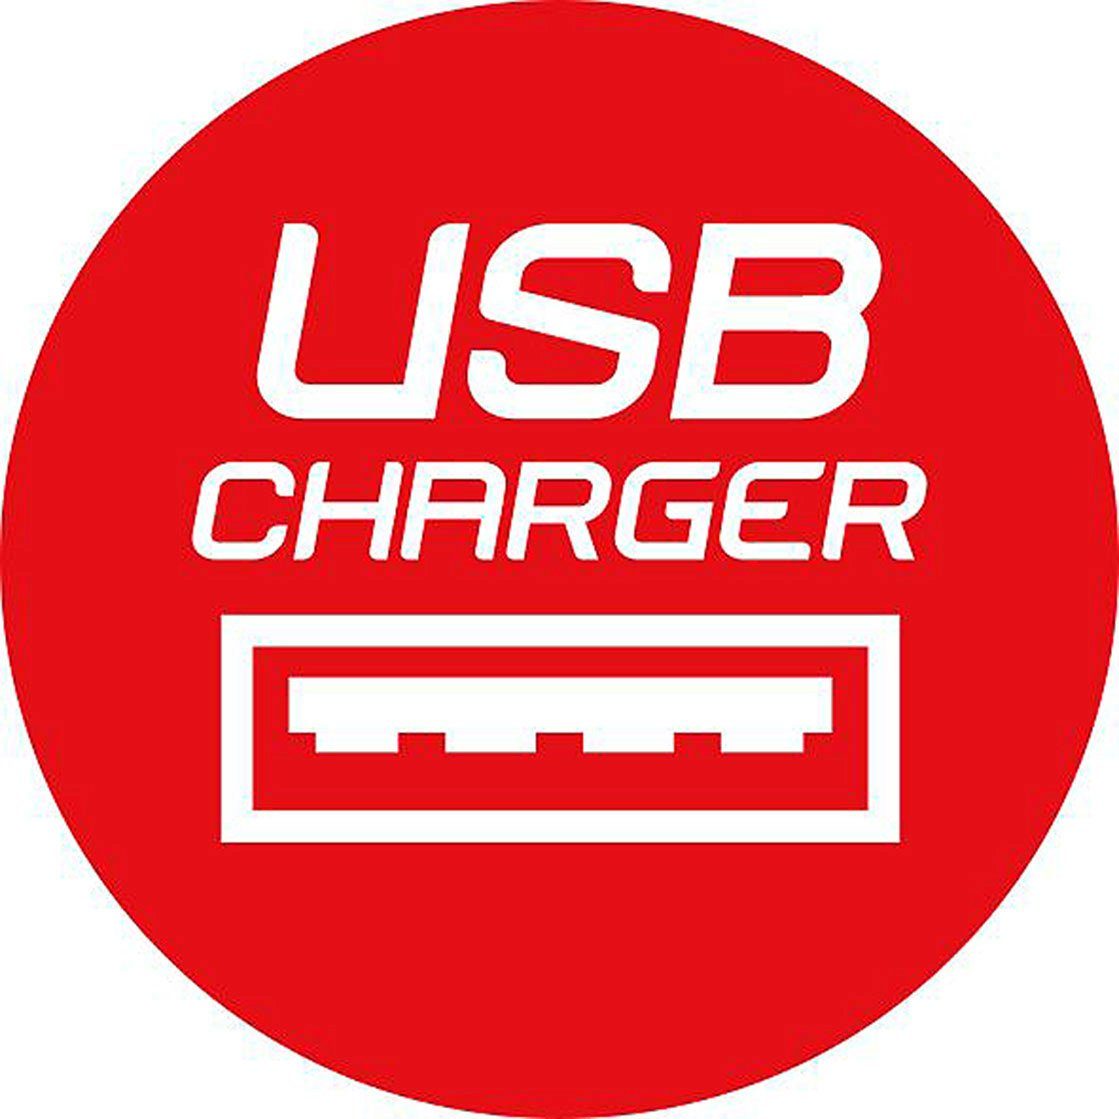 Kabellänge Steckdosenwürfel m), USB-Charger 4-fach ALEA-Power Mehrfachsteckdose 1,4 Brennenstuhl (USB-Anschluss,